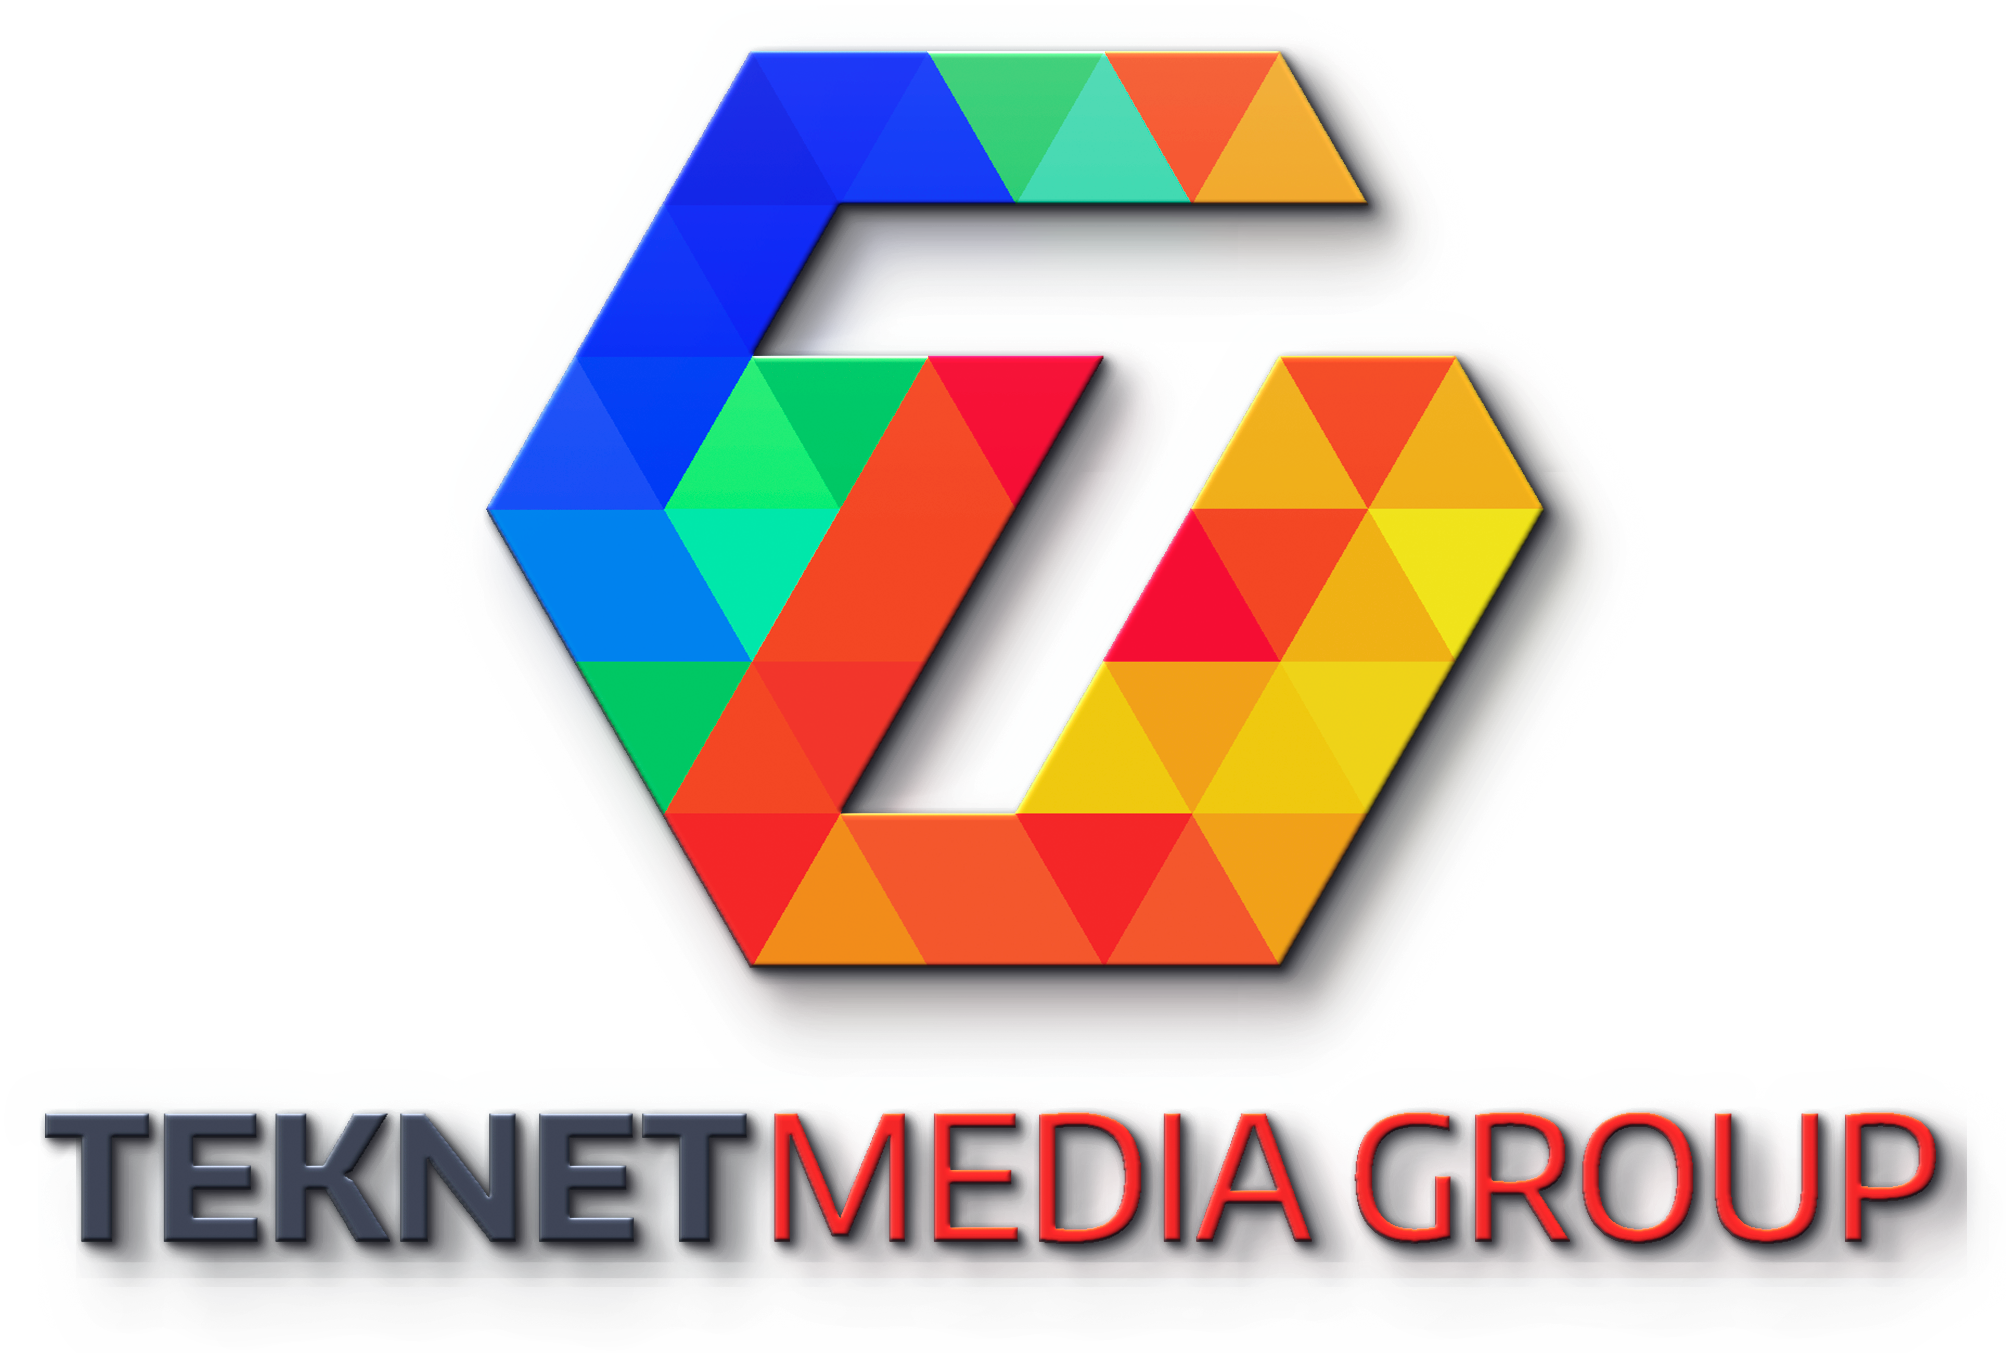 Teknet Media Group